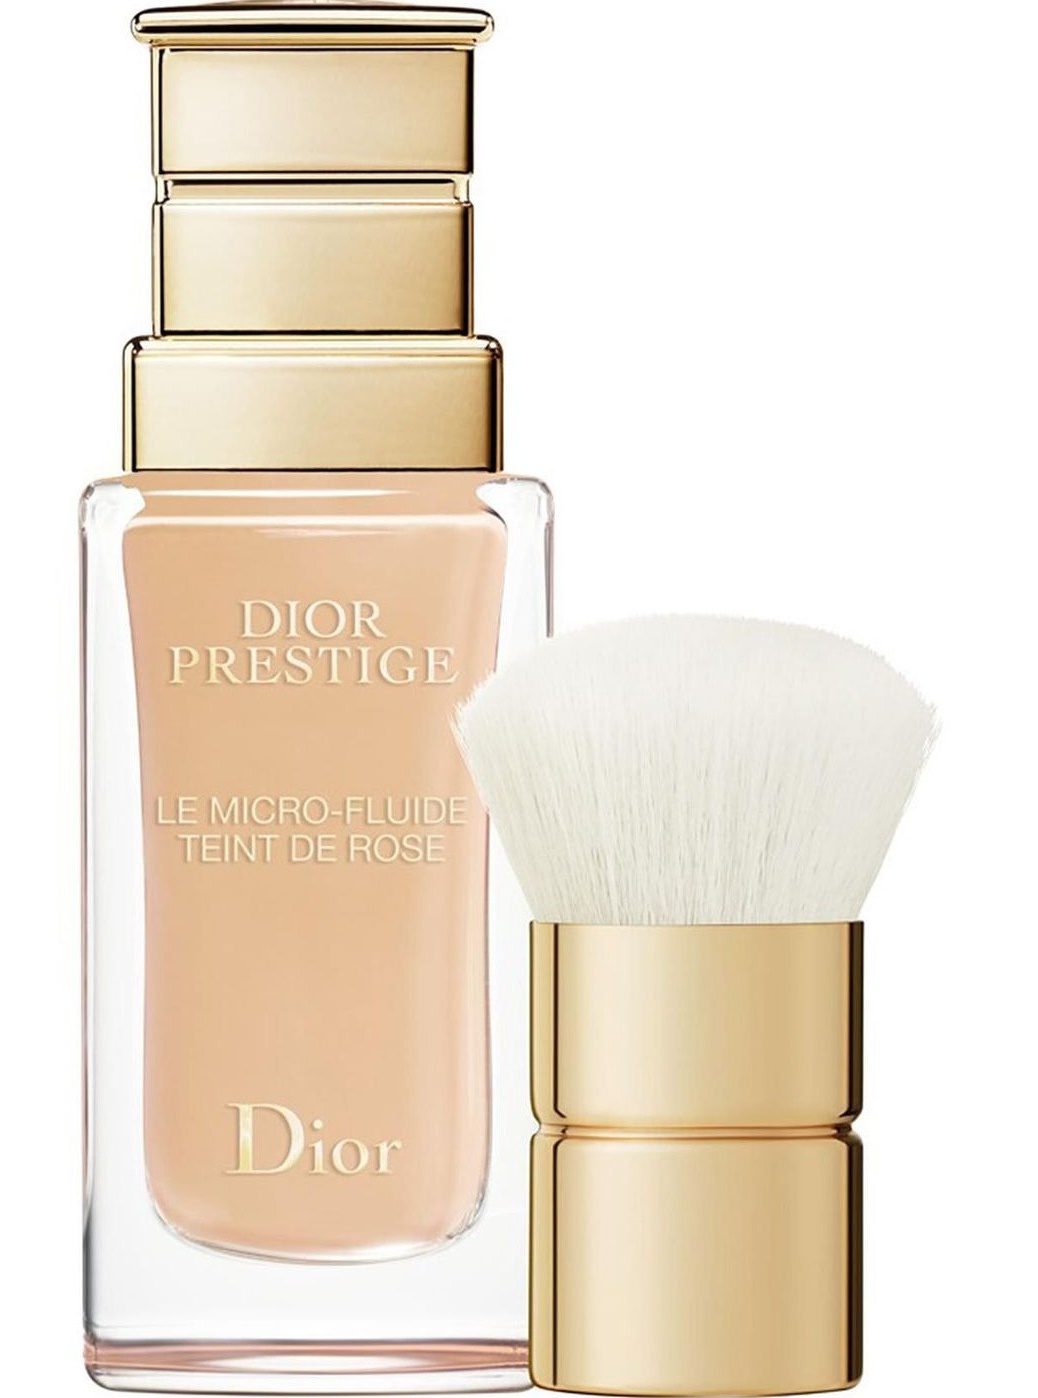 Dior Prestige Foundation Le Micro-Fluide Teint De Rose